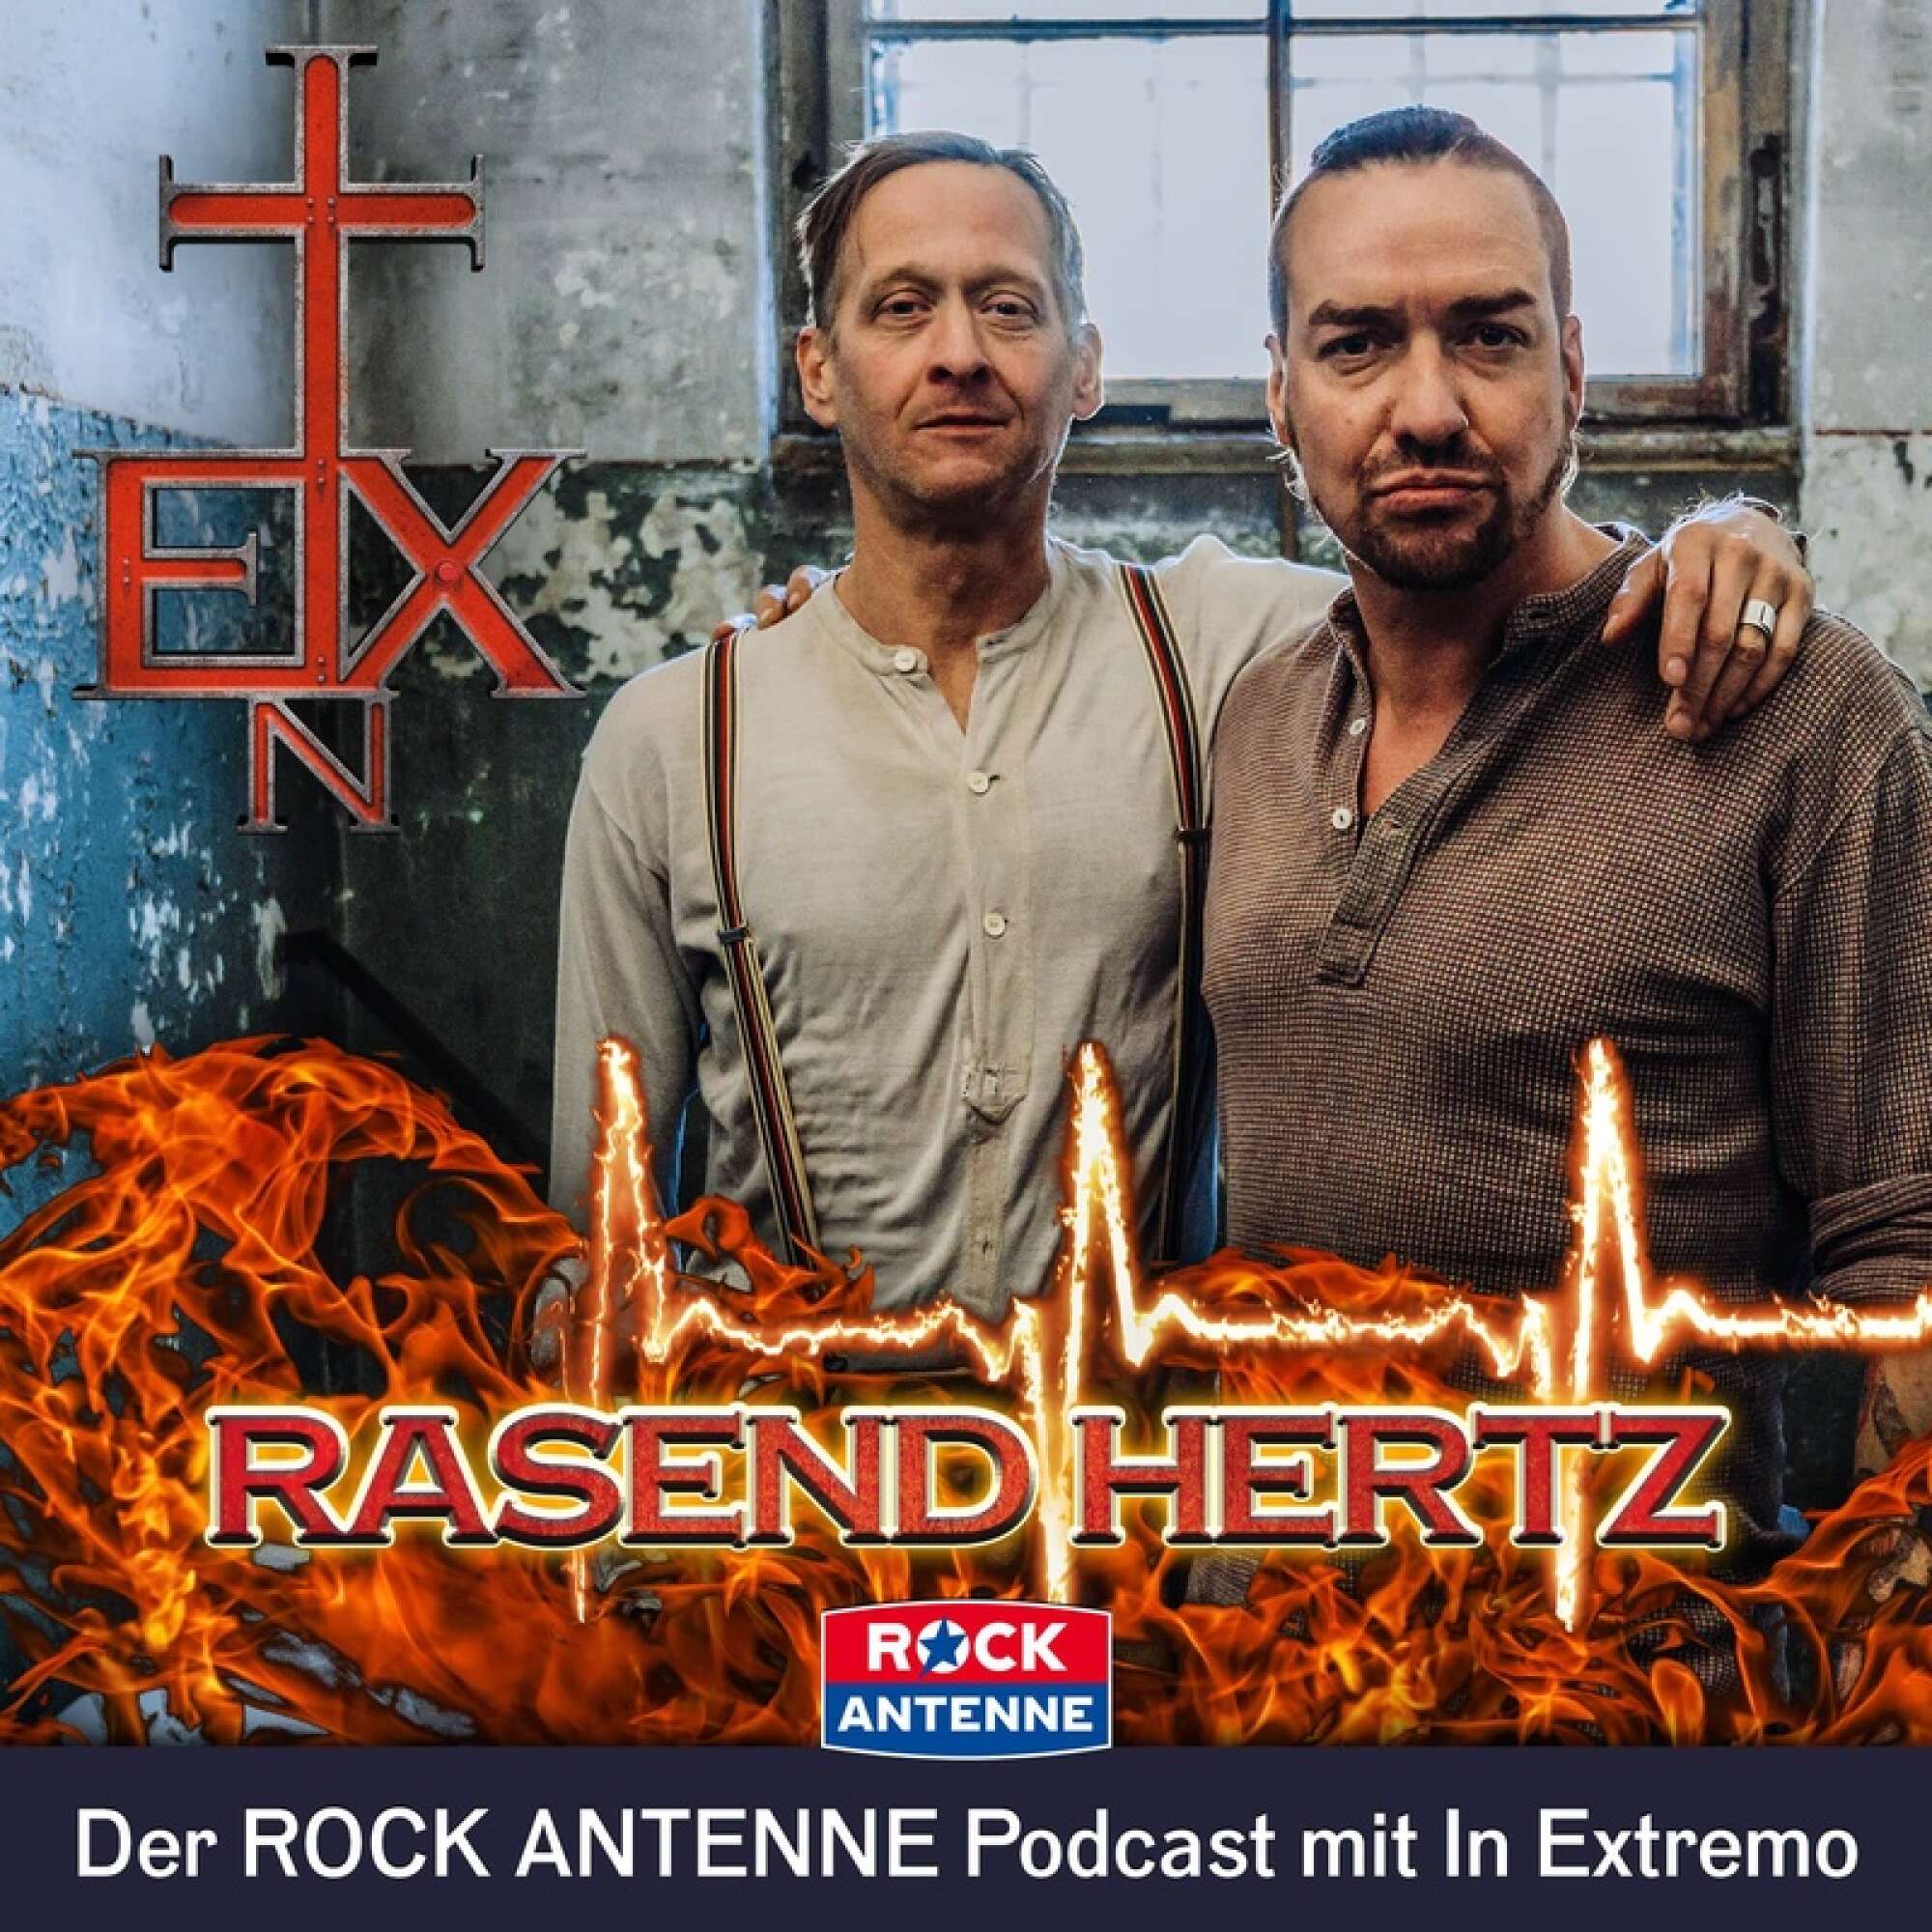 Podcast-Cover "Rasend Hertz"